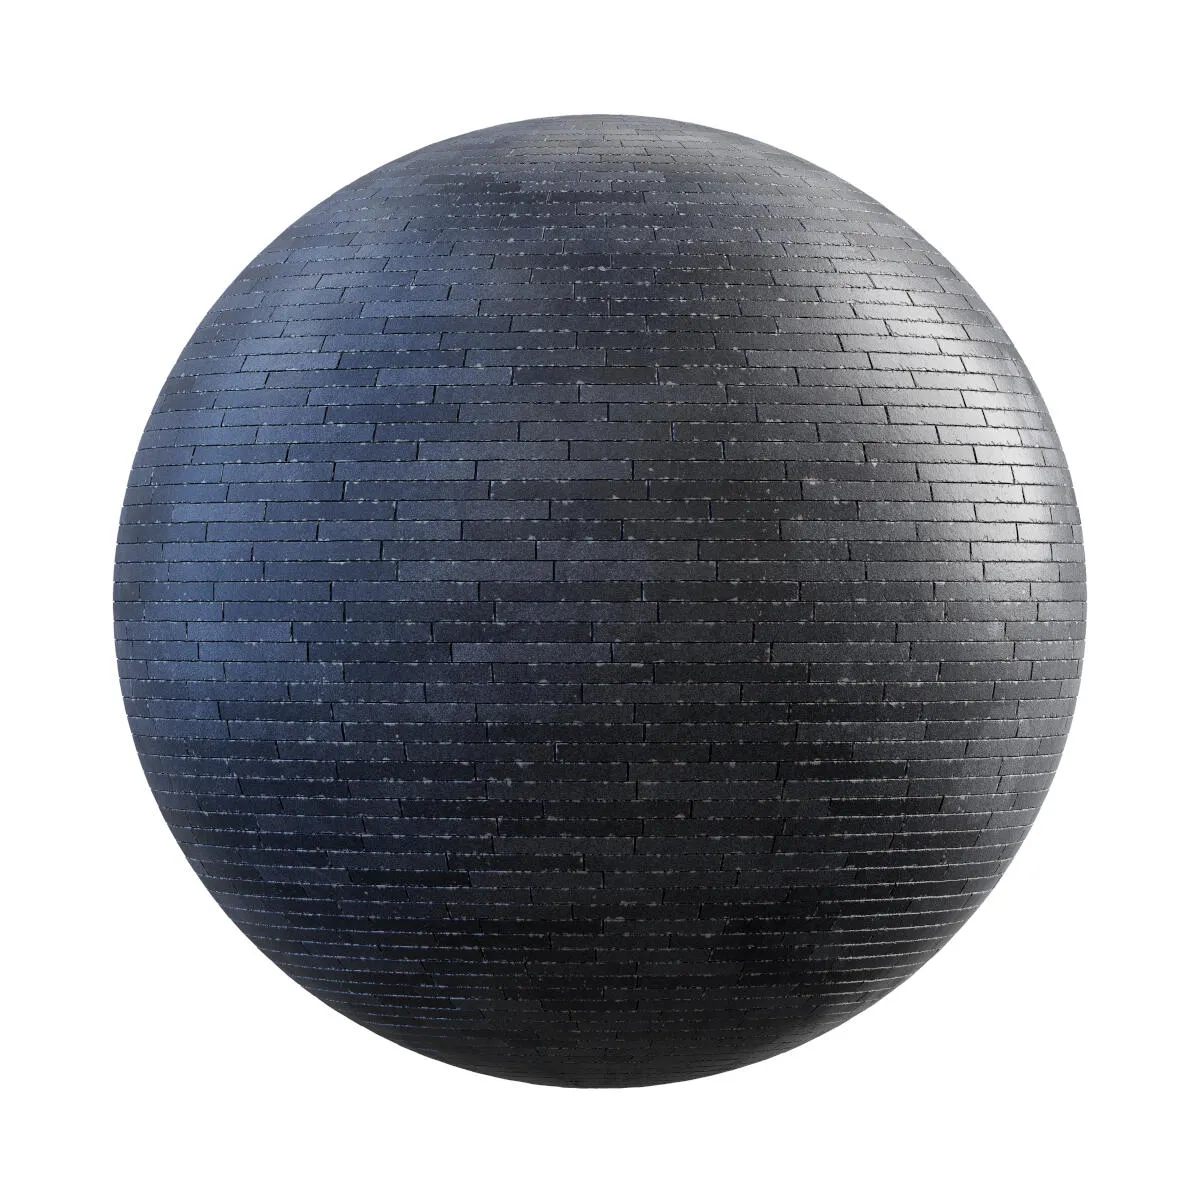 PBR Textures Volume 34 – Pavements – 4K – black_rectangular_concrete_pavement_36_77